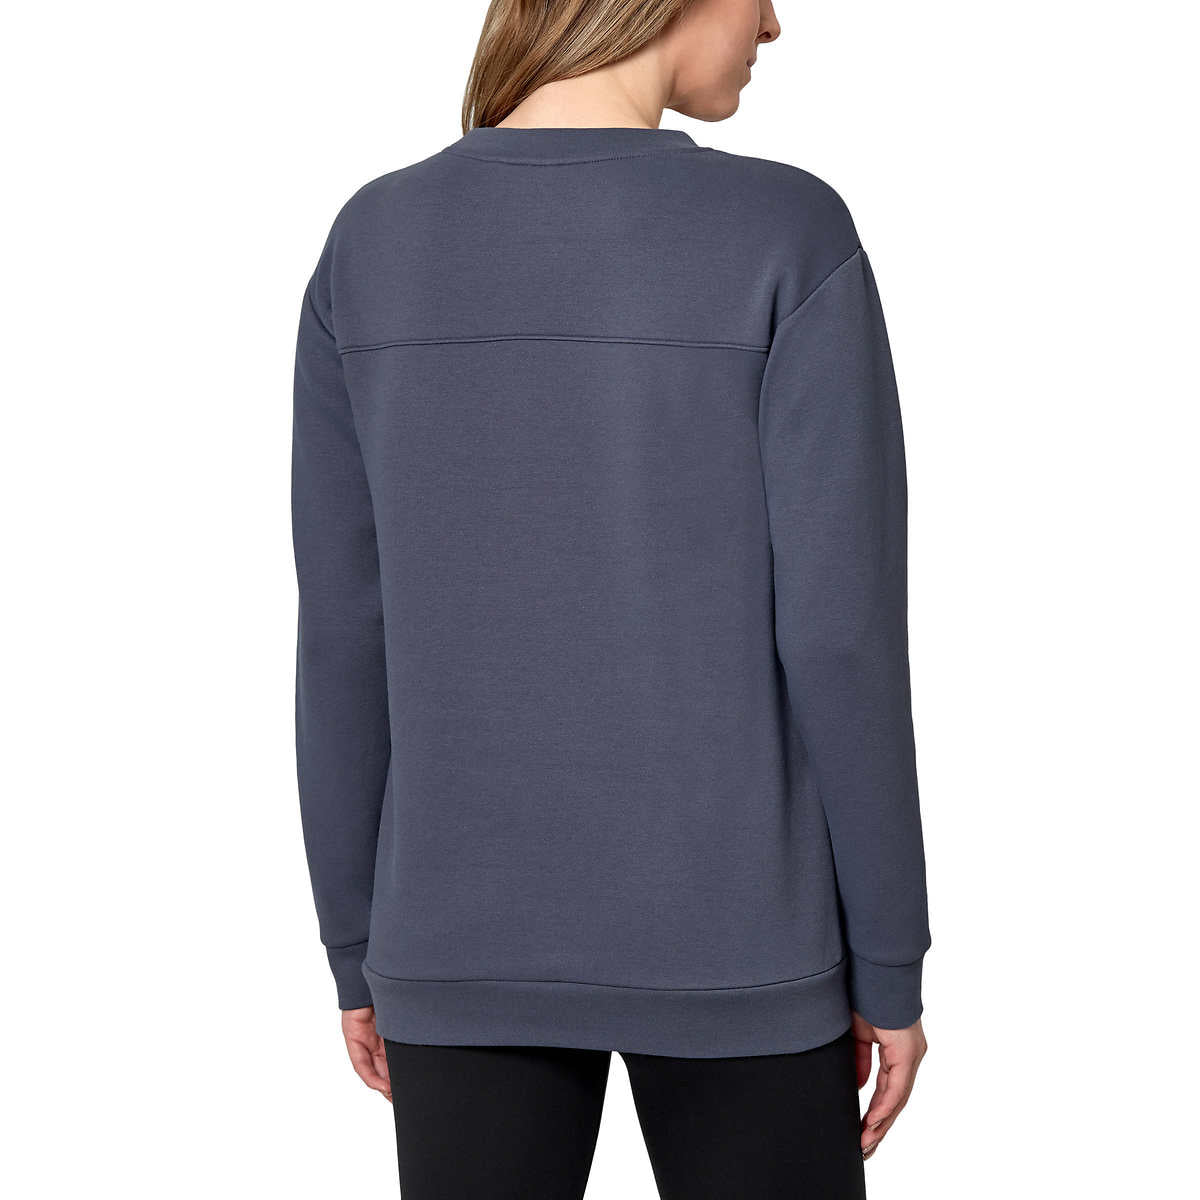 Mondetta Women's Soft Brushed Fleece Kangaroo Pocket Crewneck Top Casual Active Sweatshirt